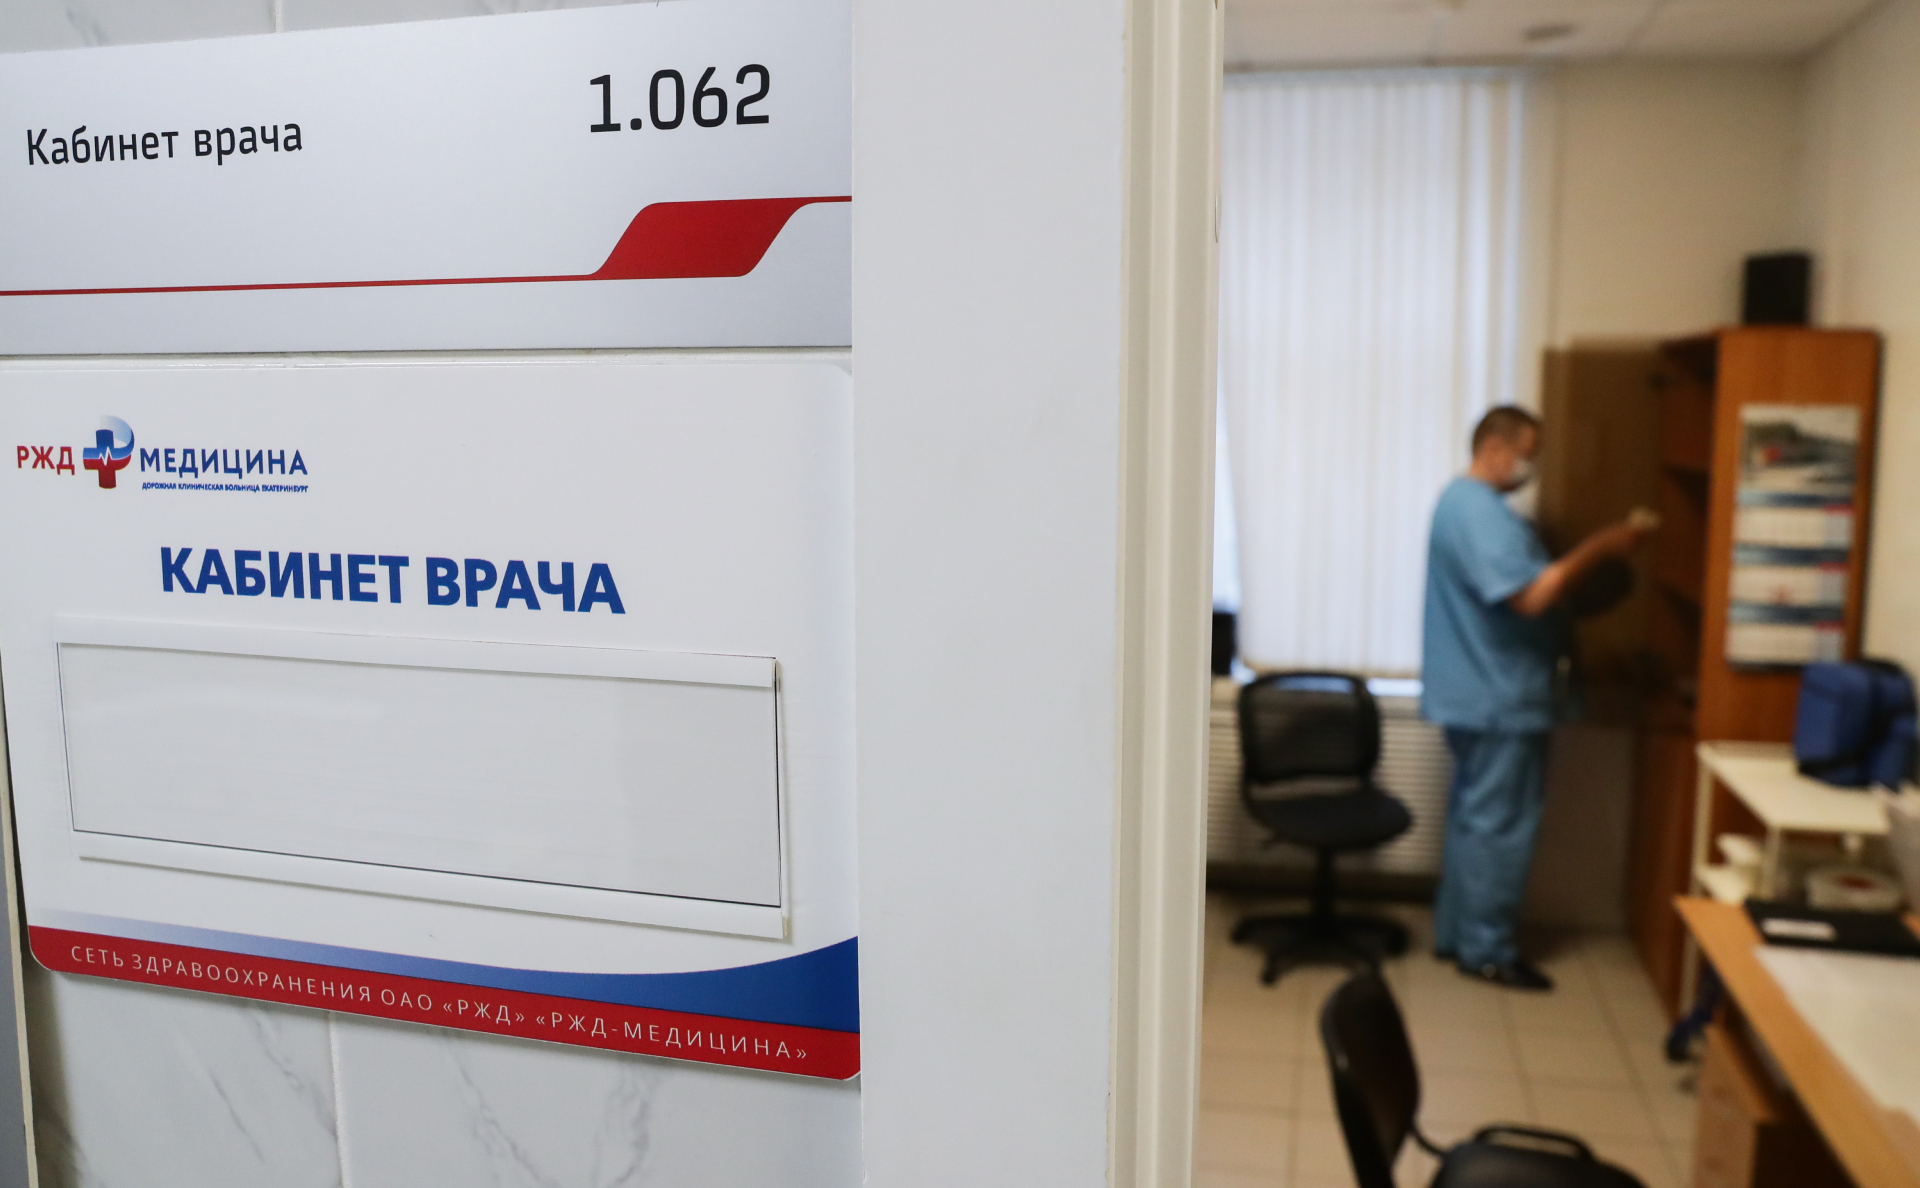 Плаквенил против коронавируса: препарат, которым будут лечить украинцев